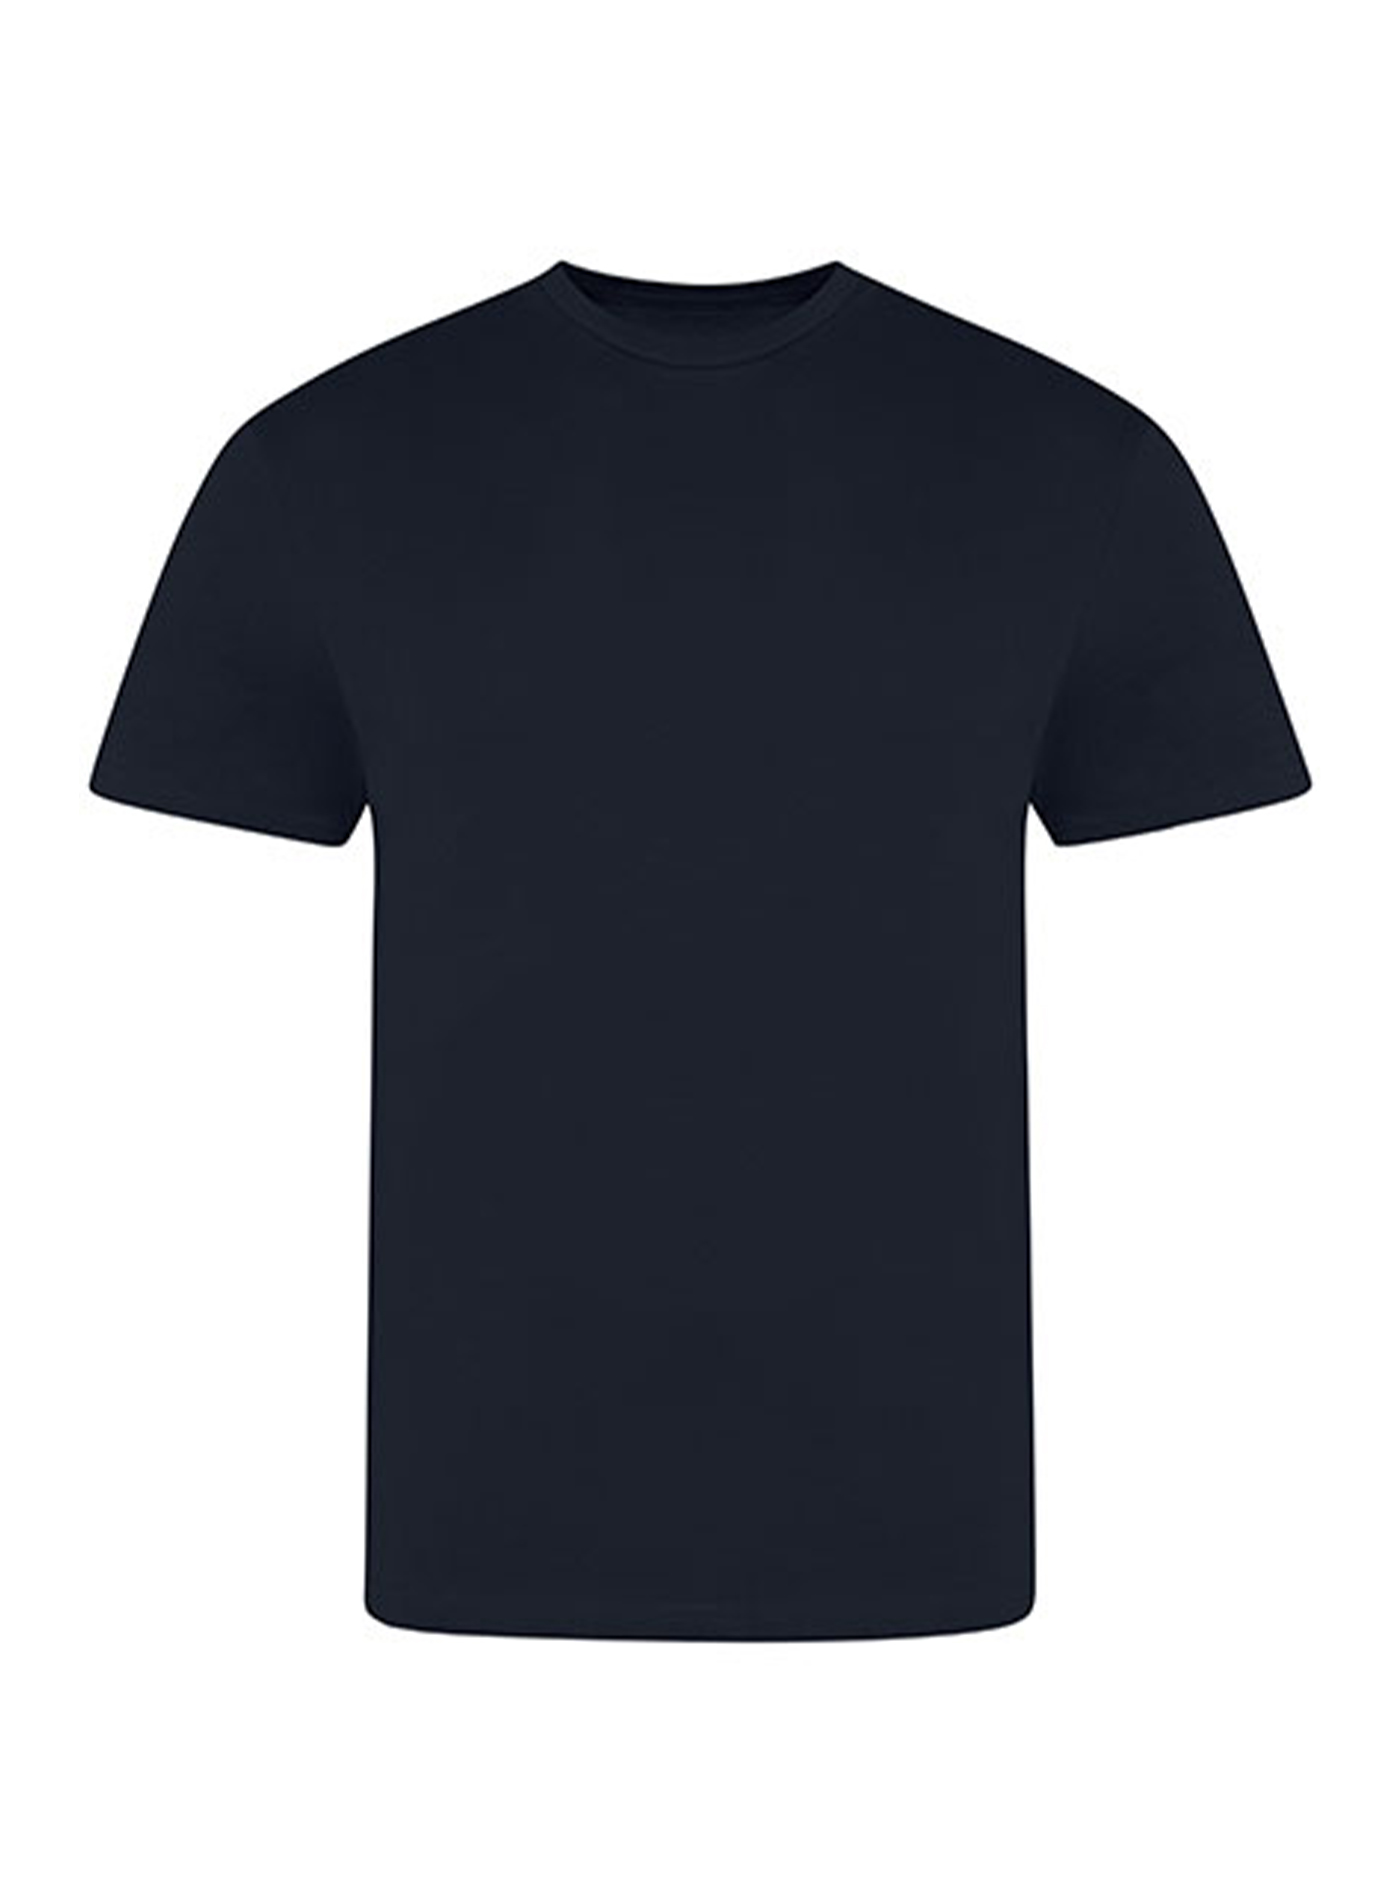 Pánské tričko Just Ts - Námořní modrá L